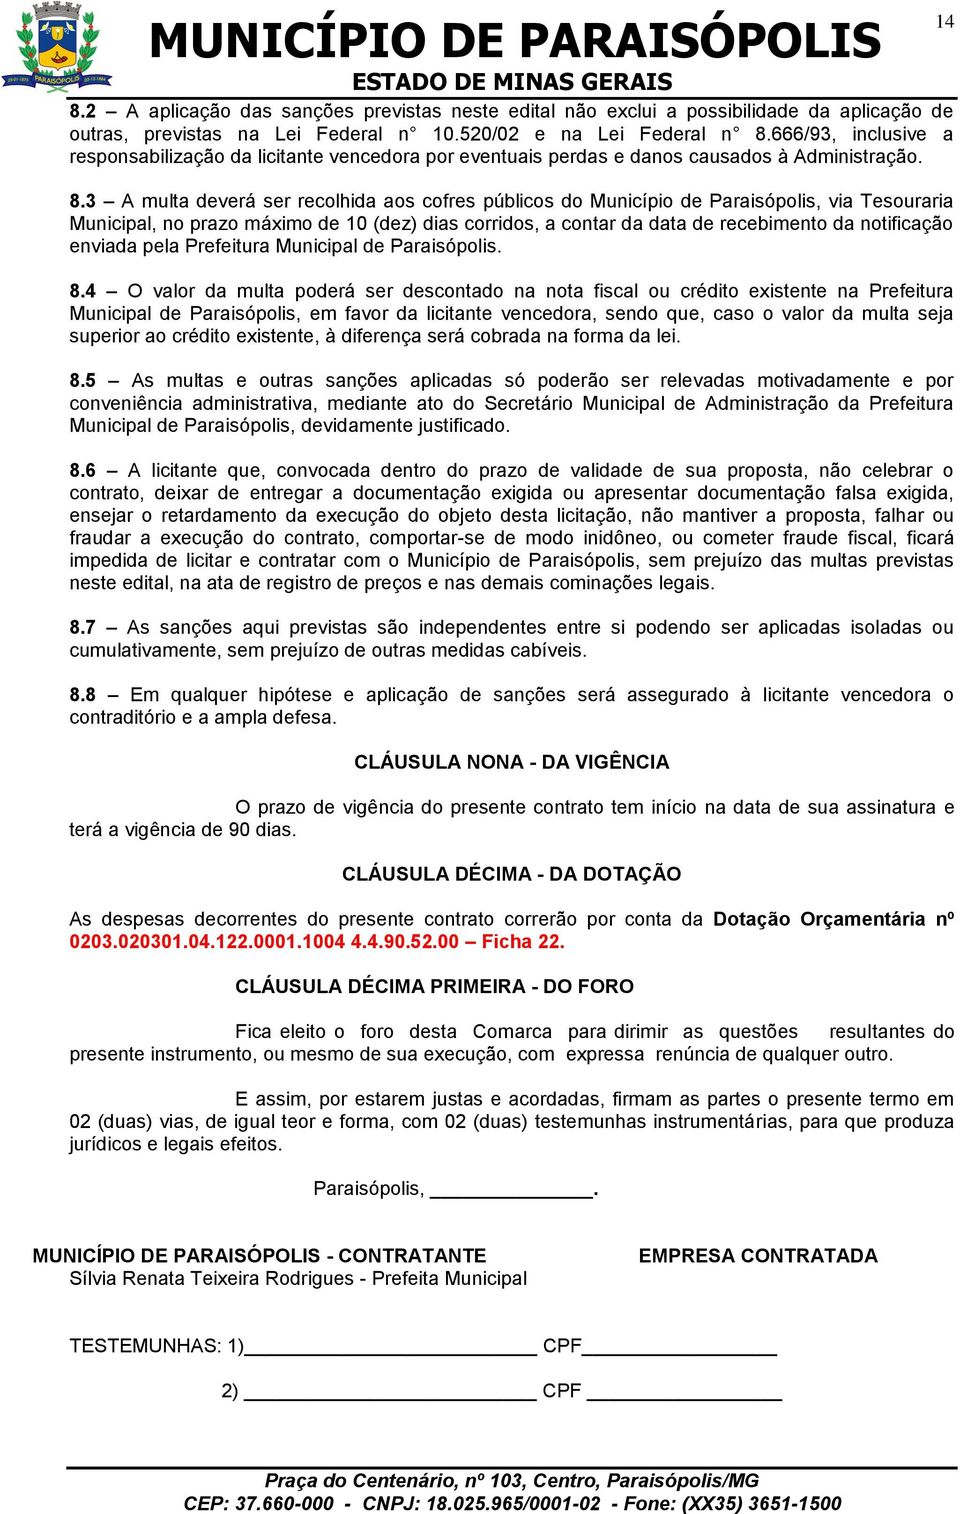 3 A multa deverá ser recolhida aos cofres públicos do Município de Paraisópolis, via Tesouraria Municipal, no prazo máximo de 10 (dez) dias corridos, a contar da data de recebimento da notificação